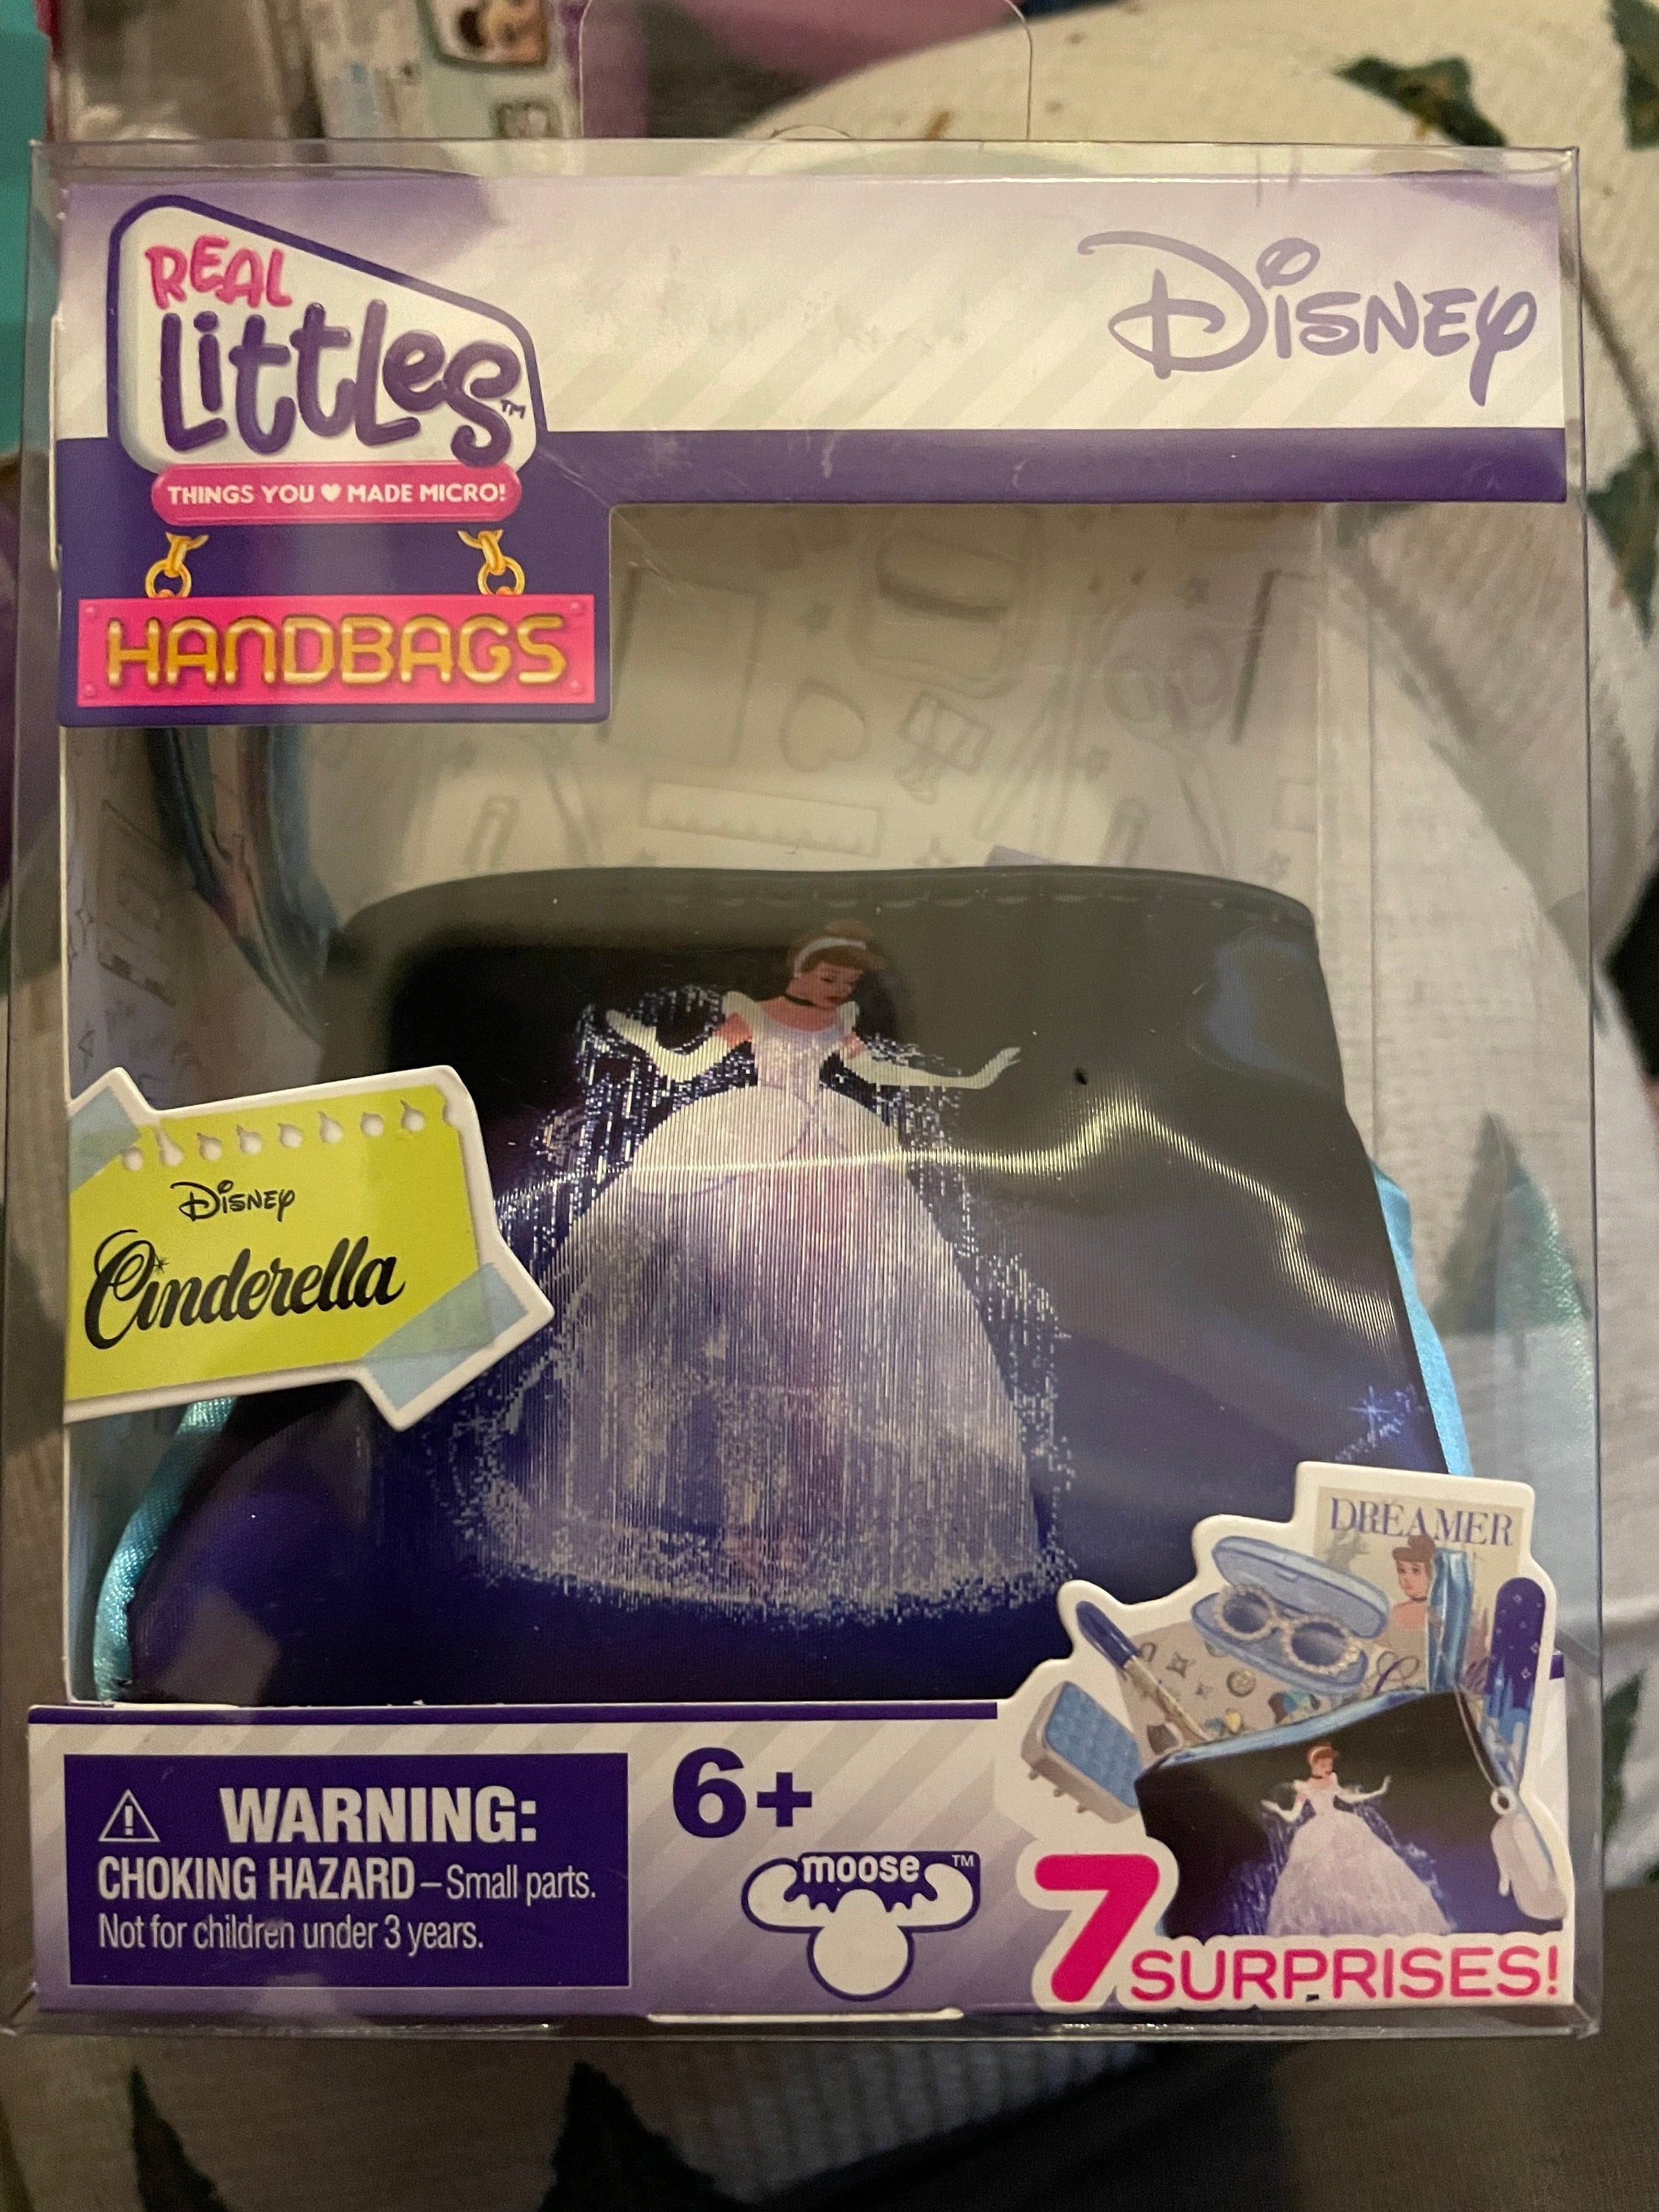 Disney Journal The Little Mermaid - Real Littles